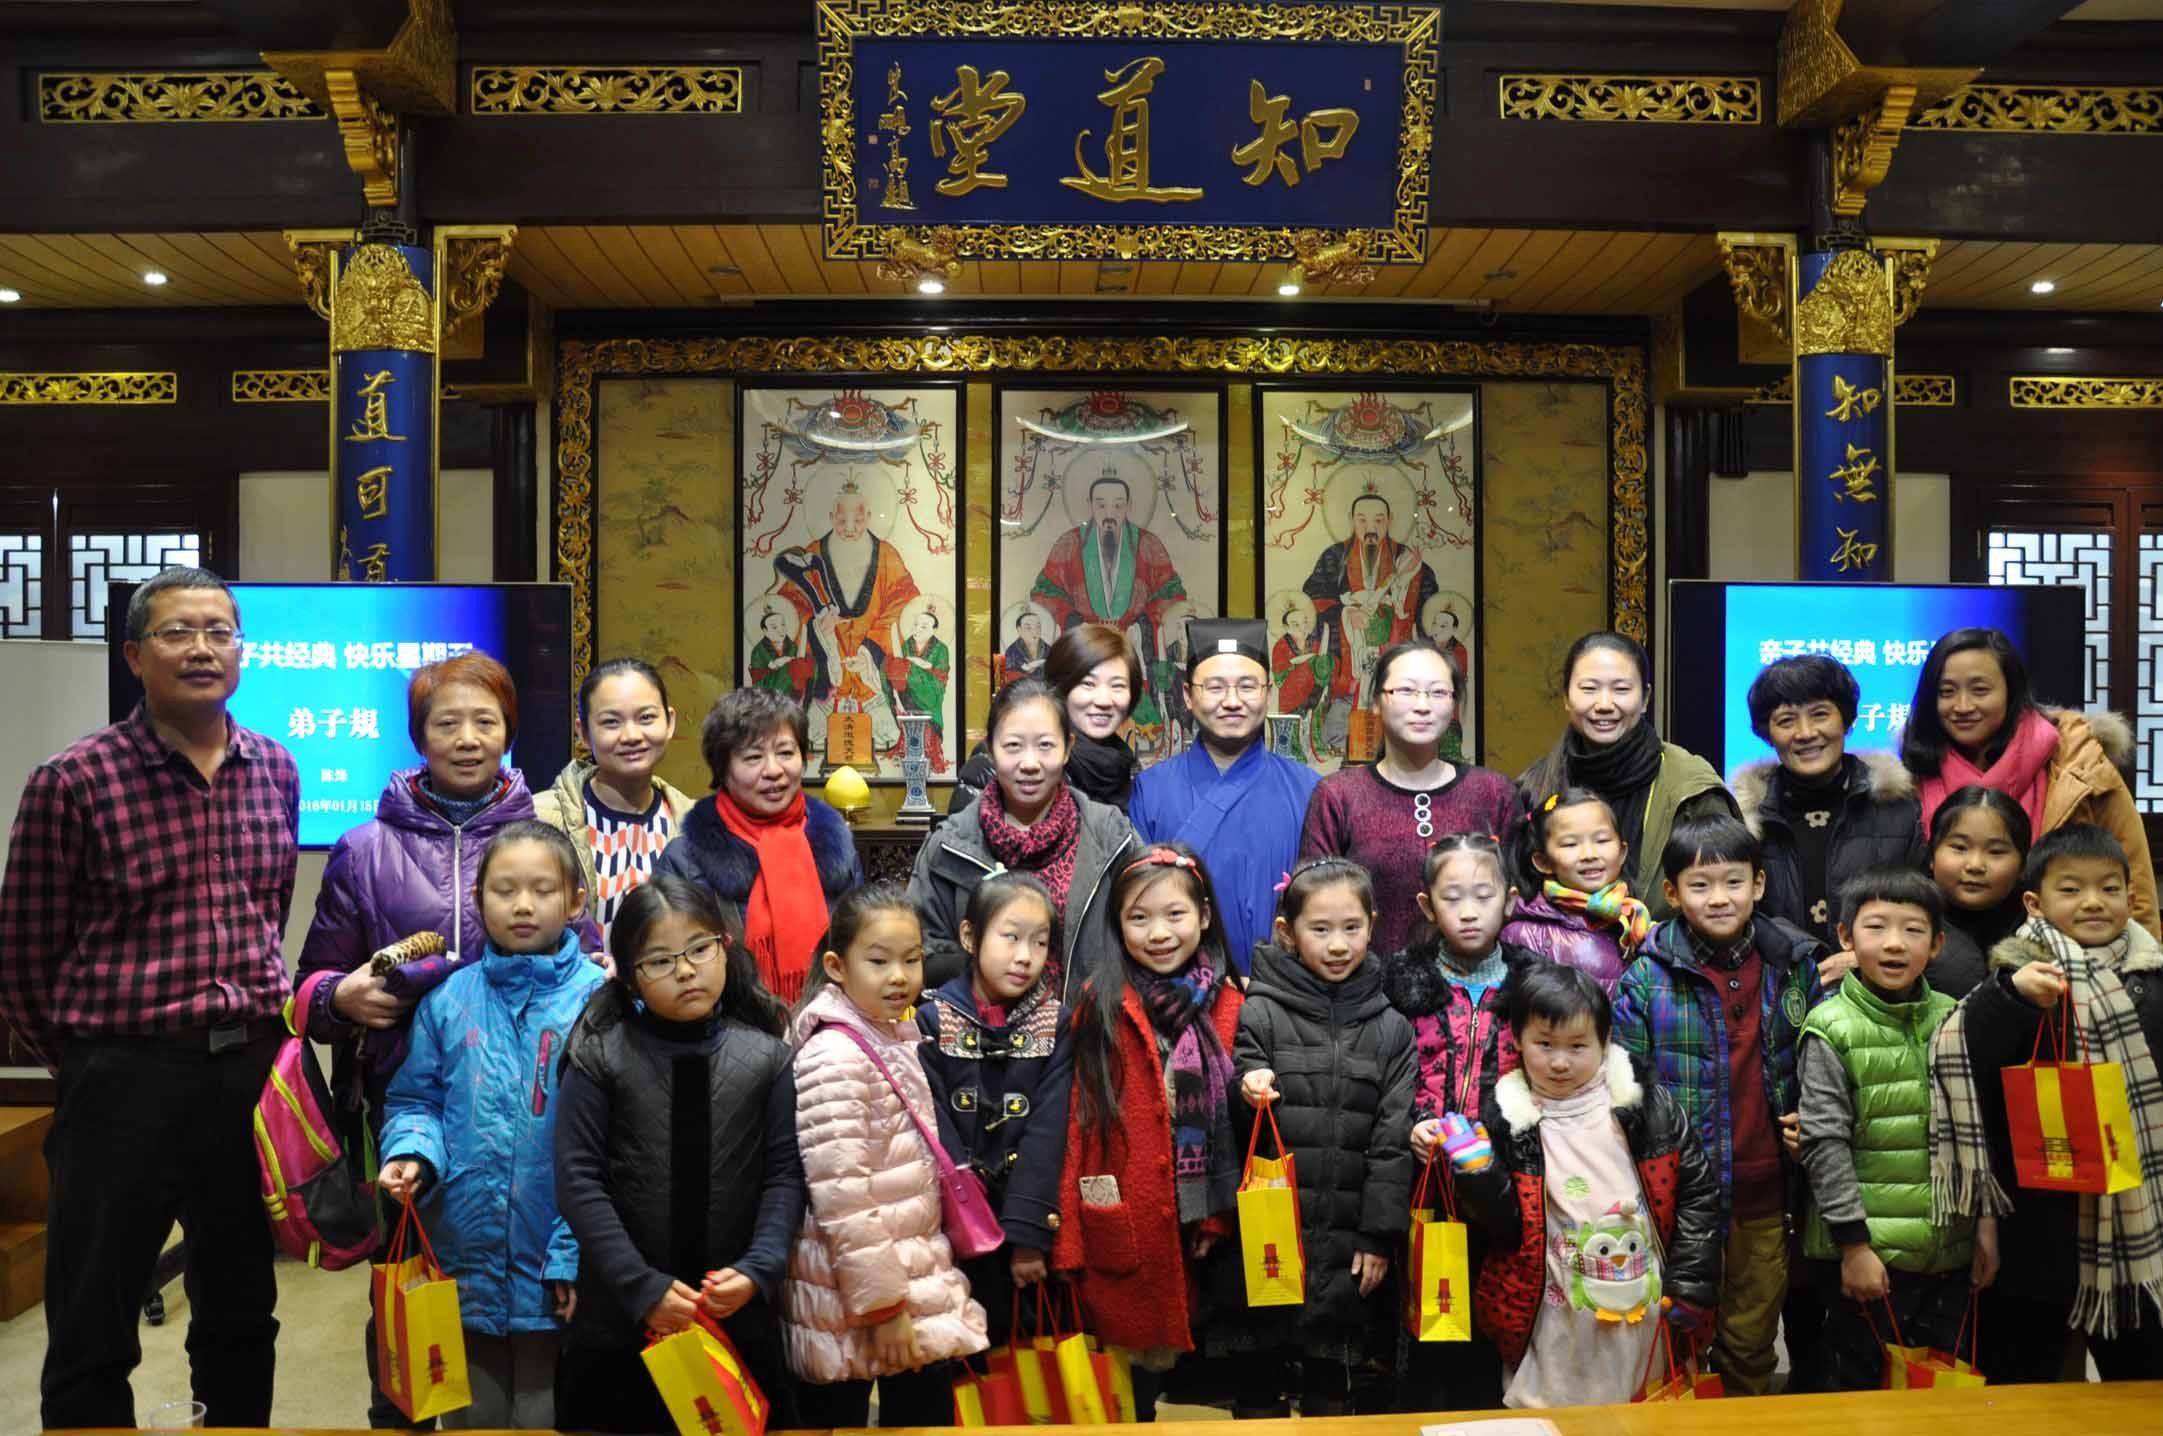 上海城隍庙举行亲子阅读、体验国学活动